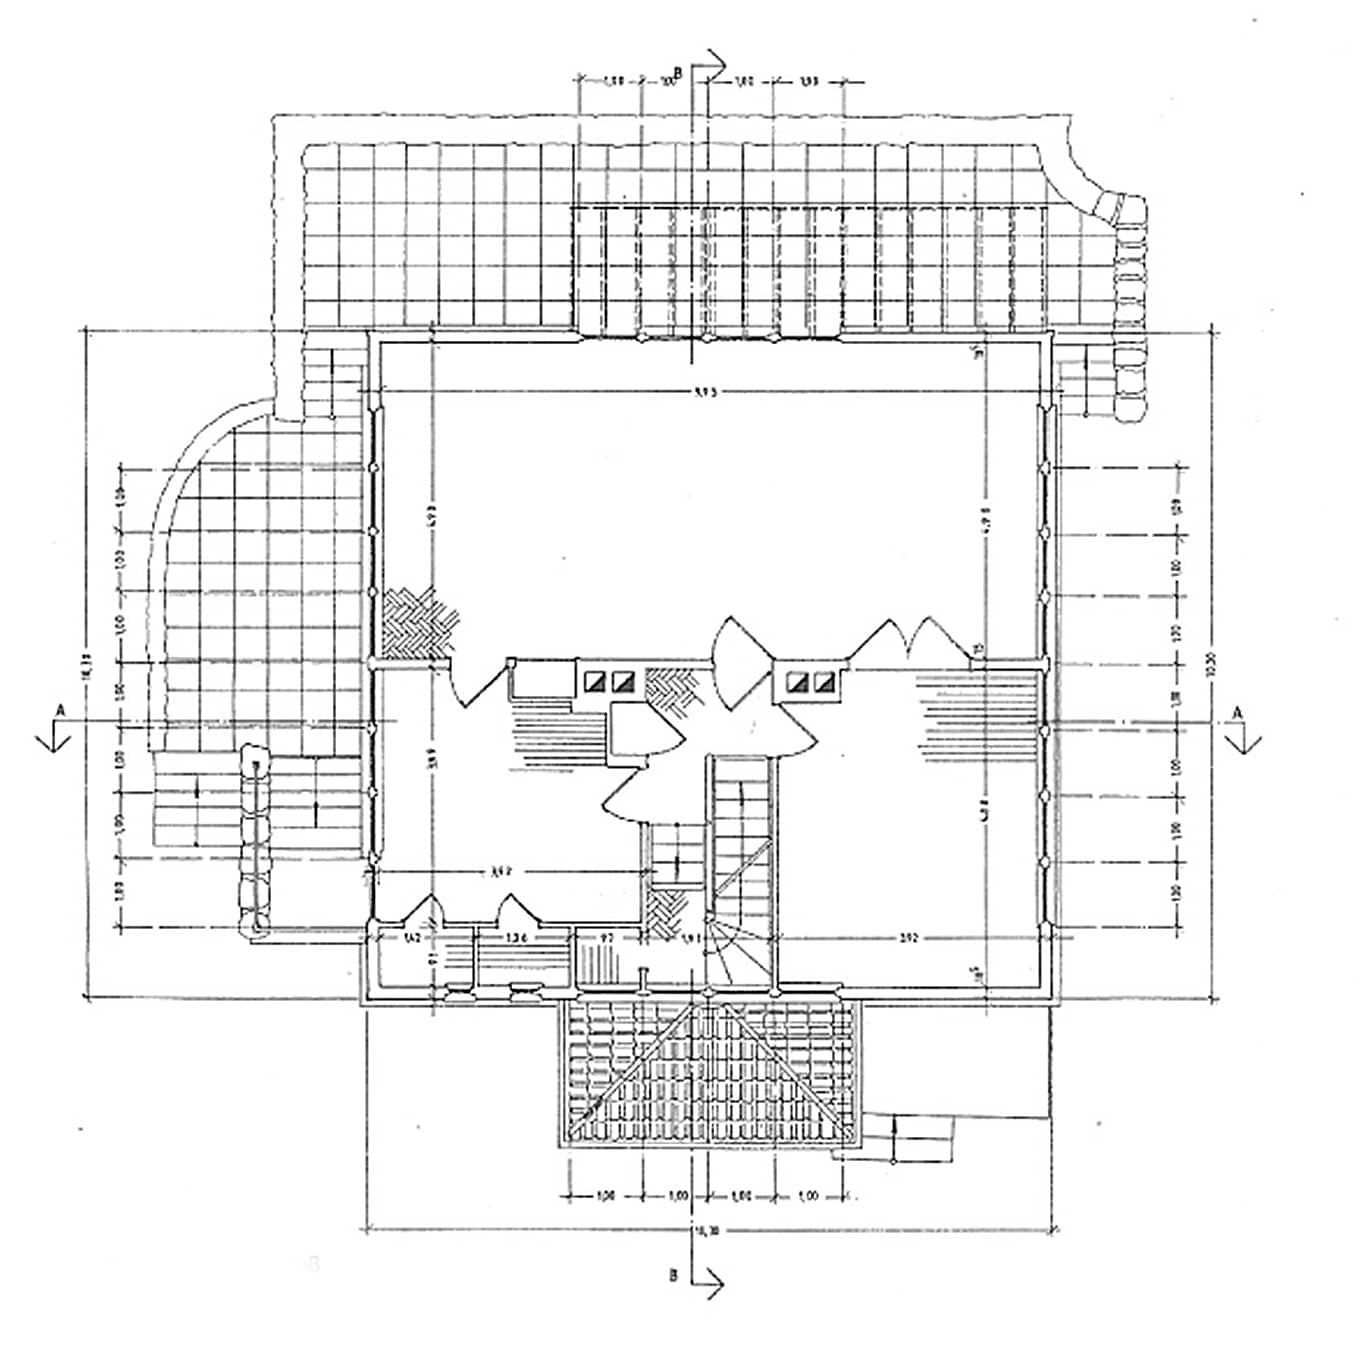 Plan of the “Neufert House” - Ground floor layout